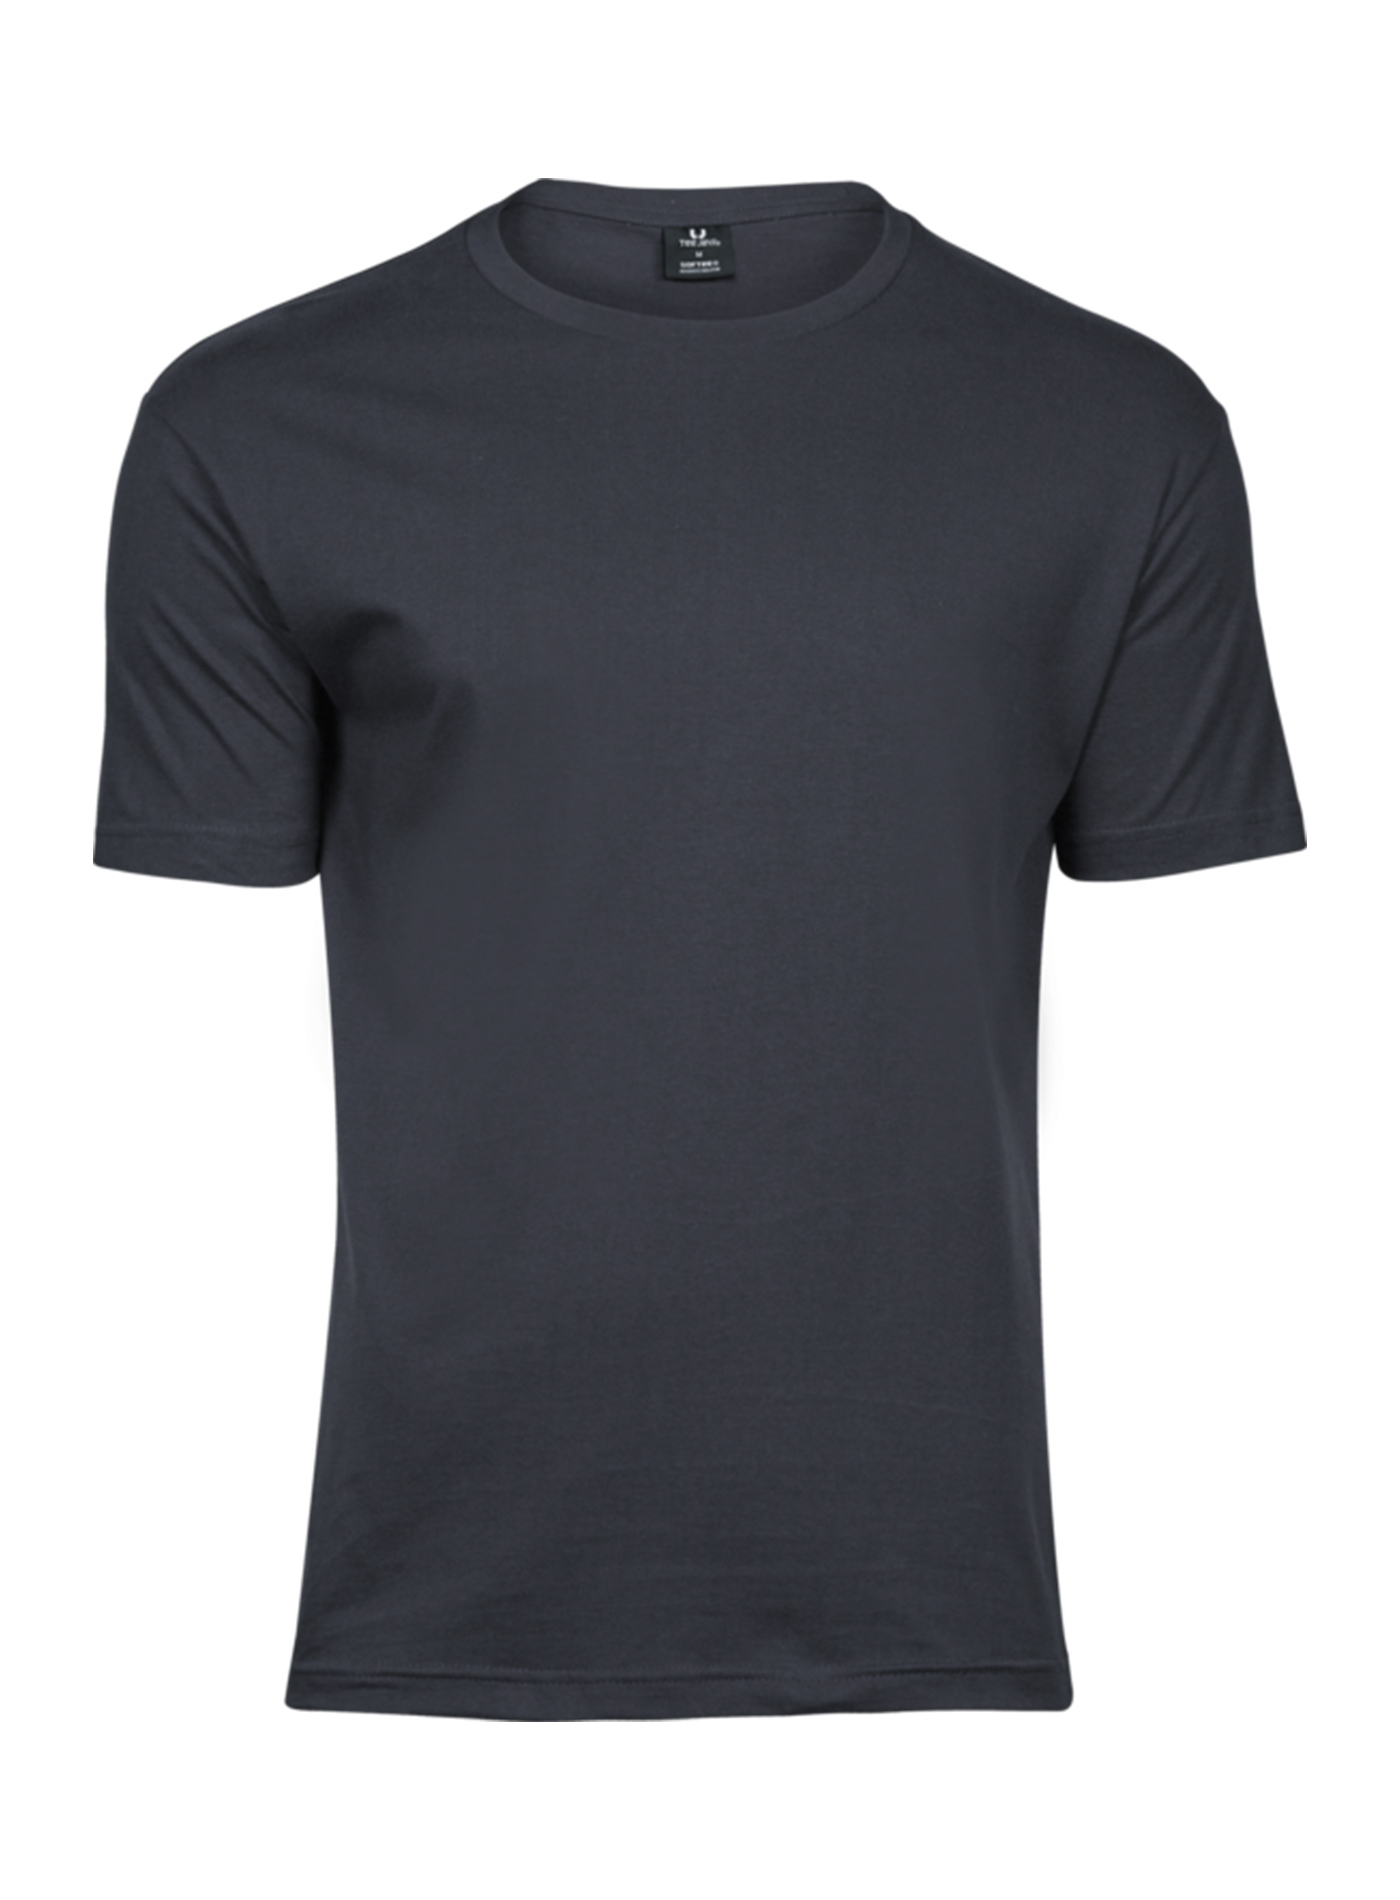 Pánské tričko Fashion Tee Jays - Tmavě šedá L